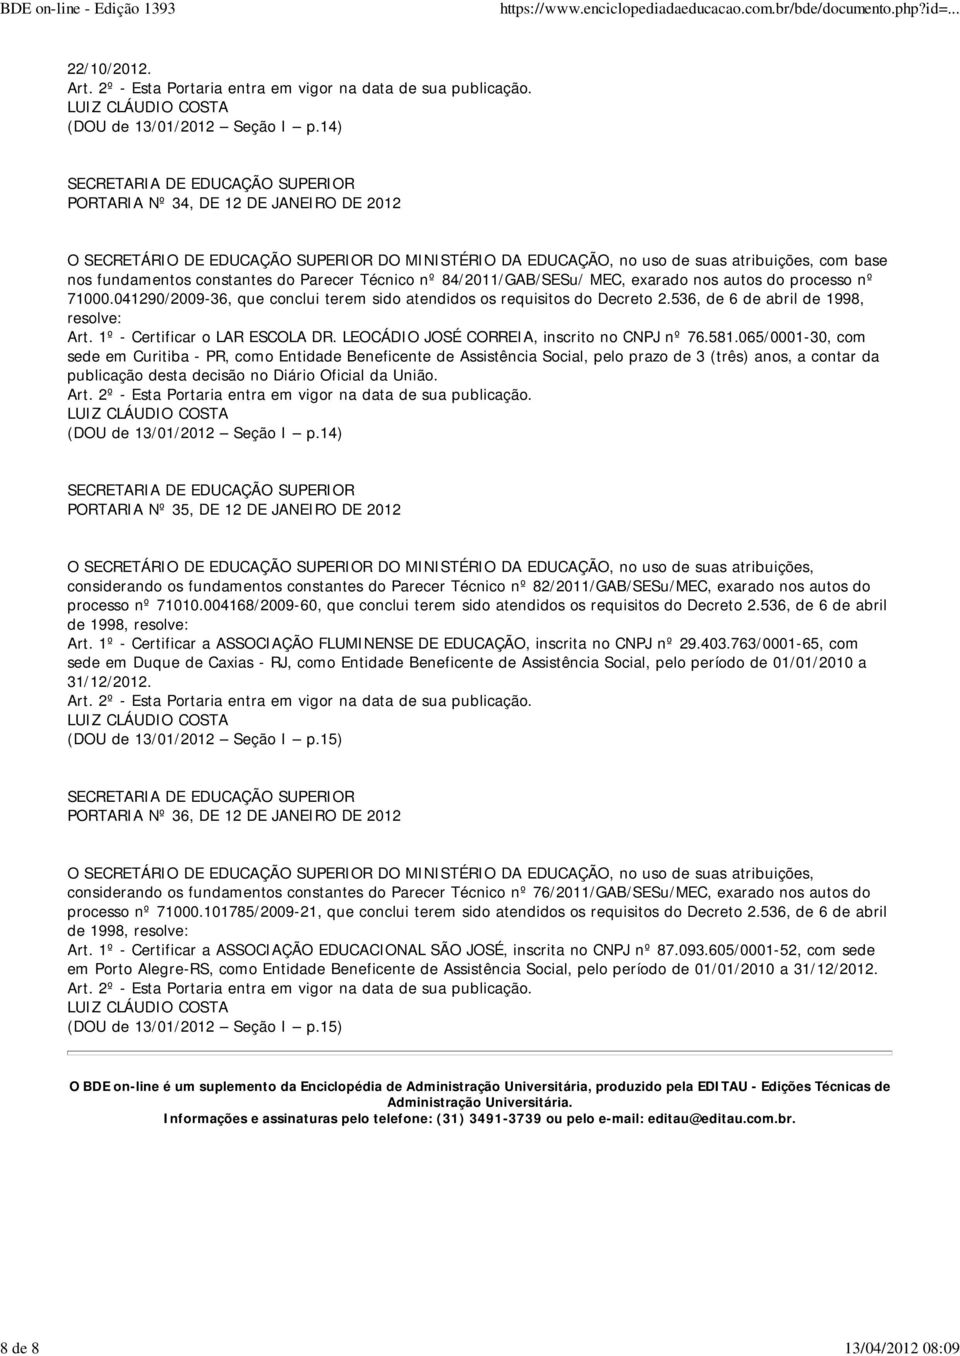 581.065/0001-30, com sede em Curitiba - PR, como Entidade Beneficente de Assistência Social, pelo prazo de 3 (três) anos, a contar da publicação desta decisão no Diário Oficial da União.